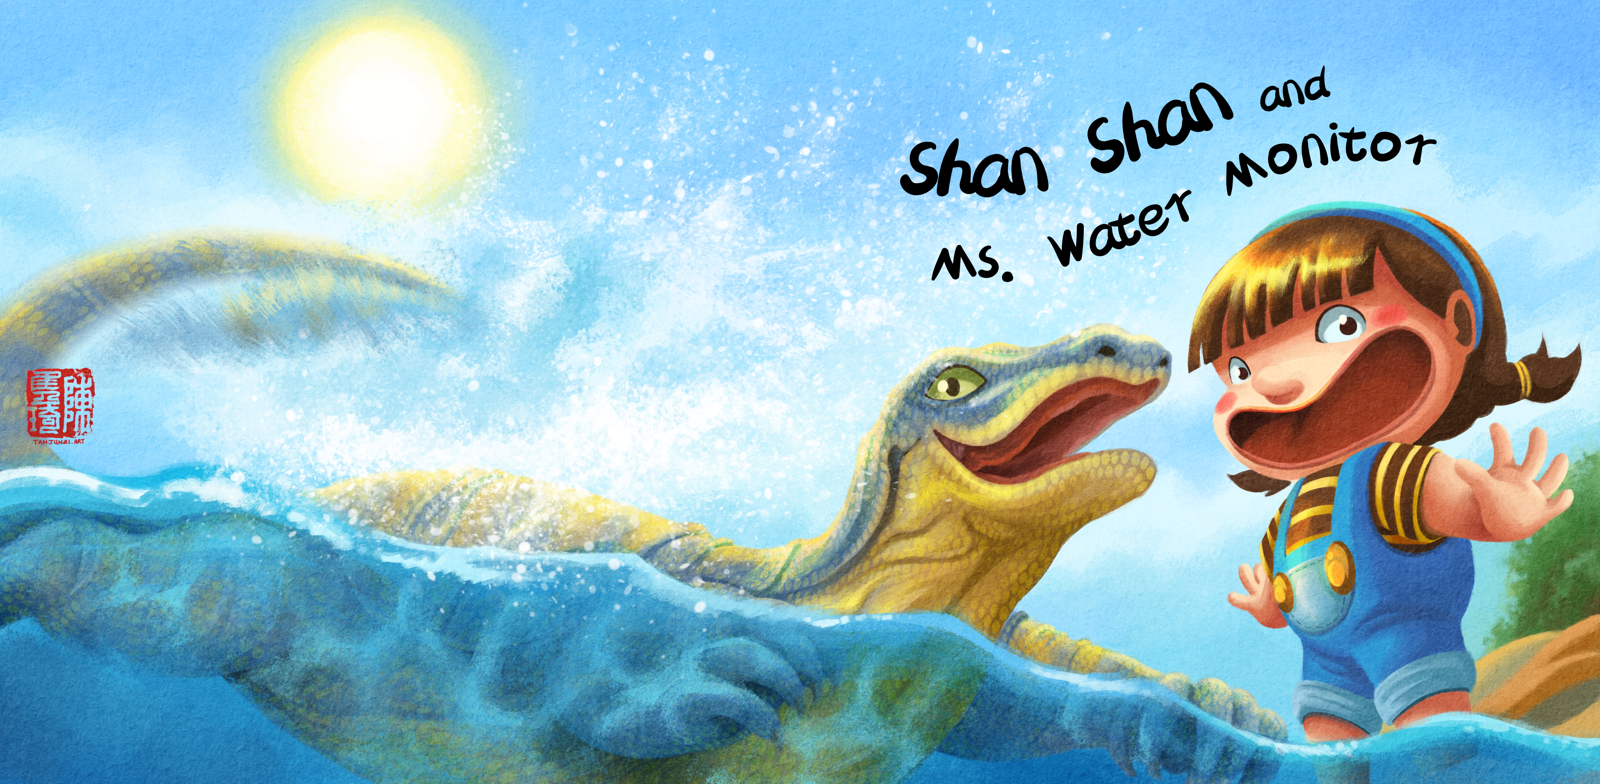 《和珊珊一起成长》的儿童绘本系列的第一本书 《珊珊和四脚蛇小姐》的封面插画设计(英文版)。珊珊和四脚蛇小姐正在海边很开心地玩水。